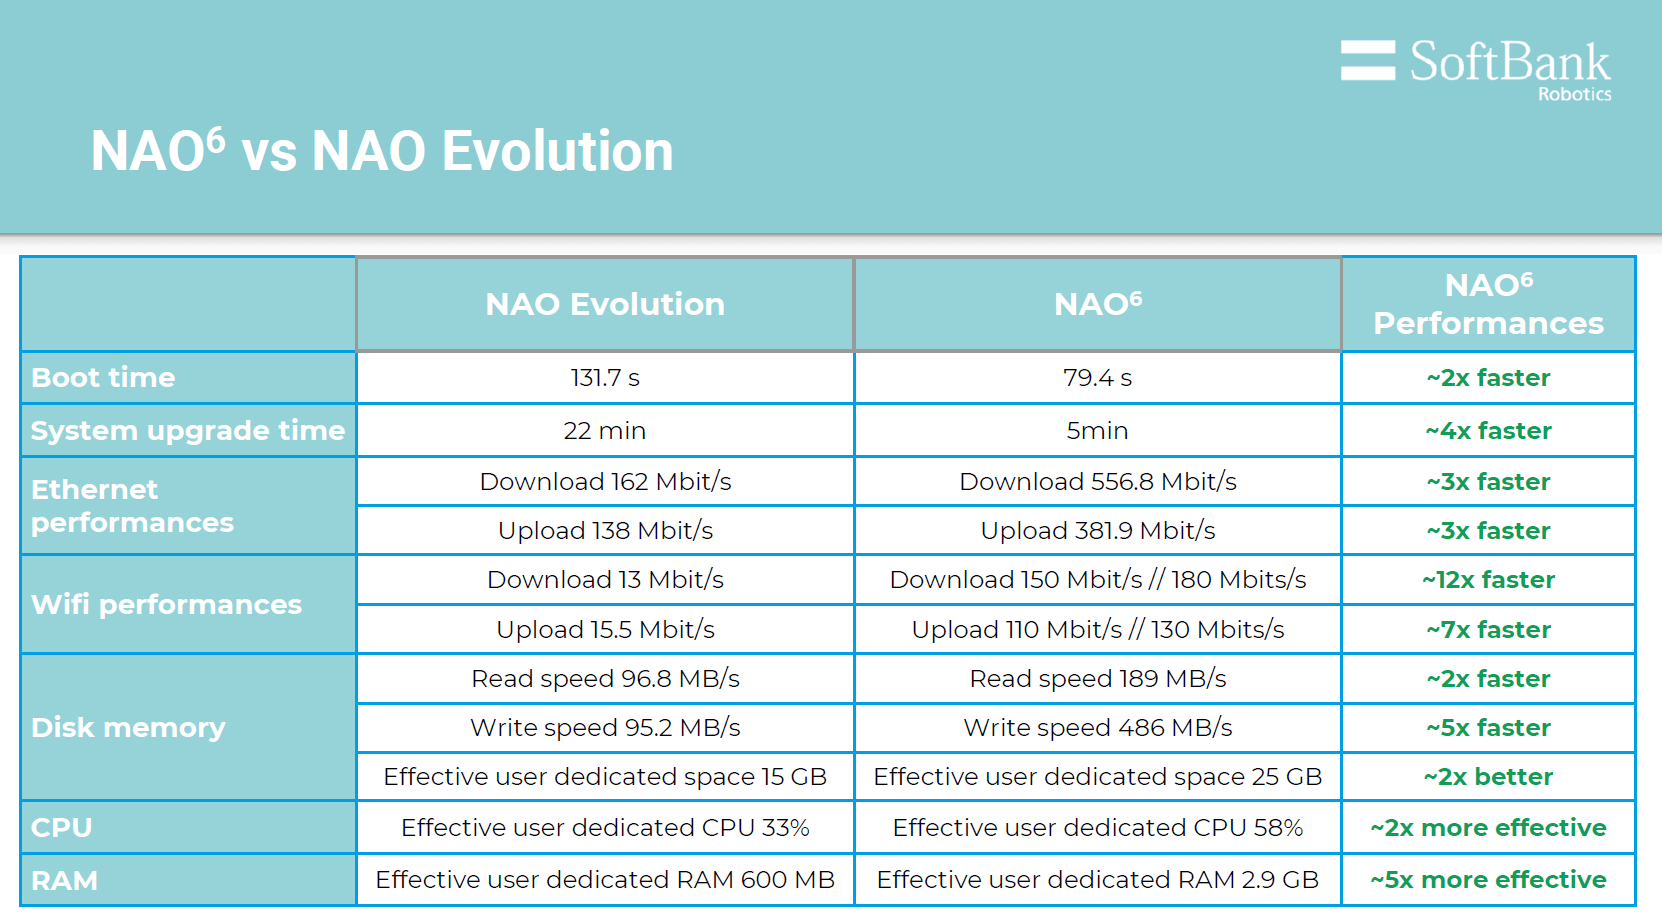 NAO Robot V6 comparison to previous NAO Robot models